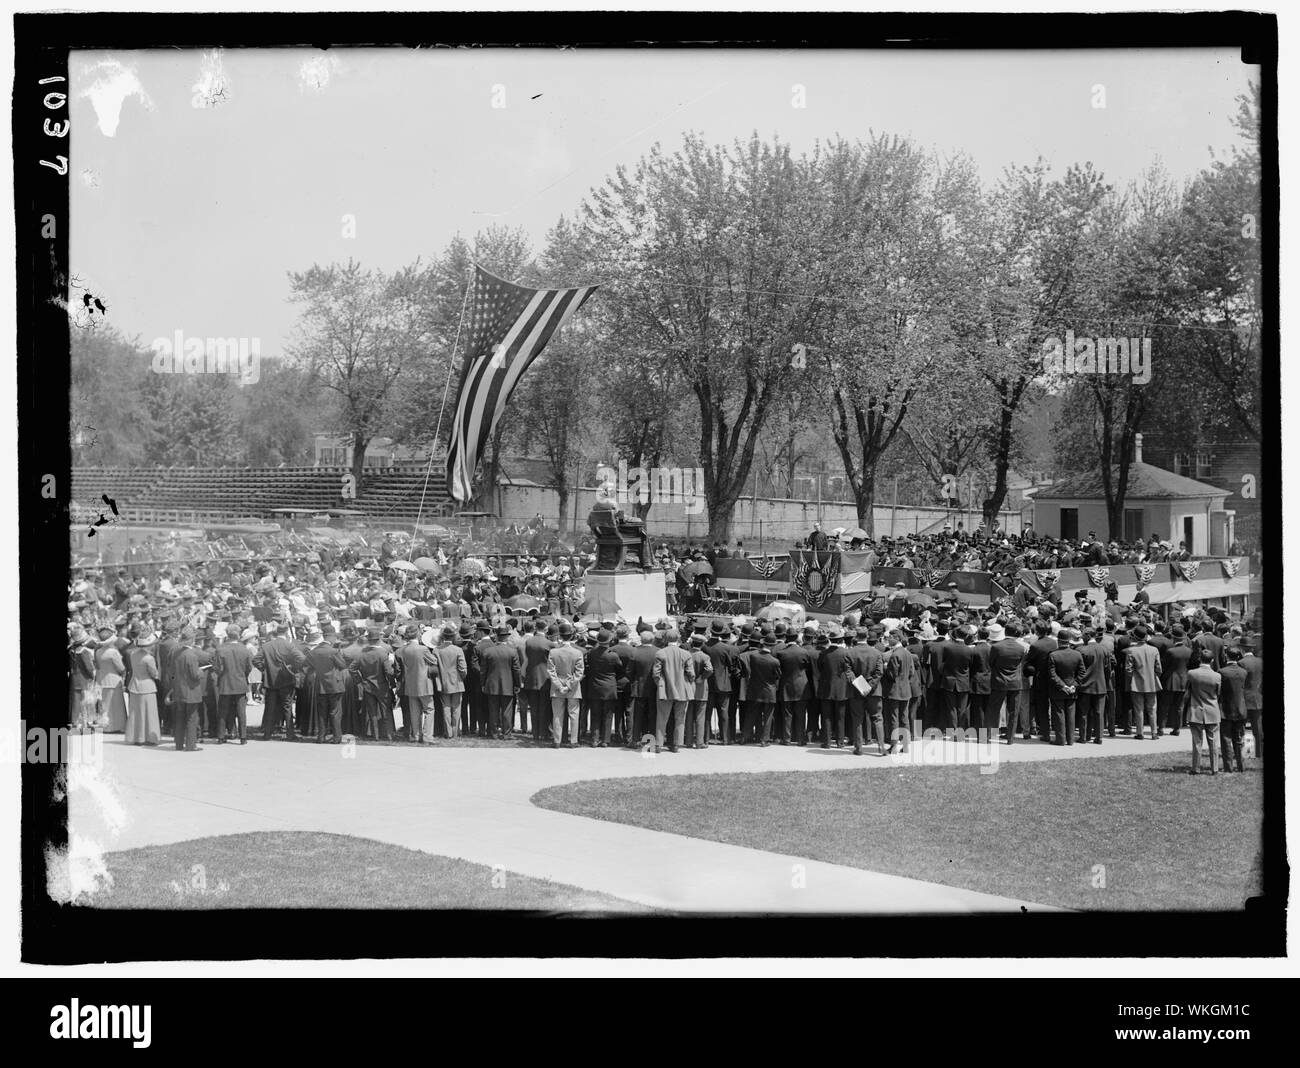 Photographie de la foule entourant la statue Bishop John Carroll à l'Université de Georgetown au cours de son inauguration le 4 mai 1912 Banque D'Images